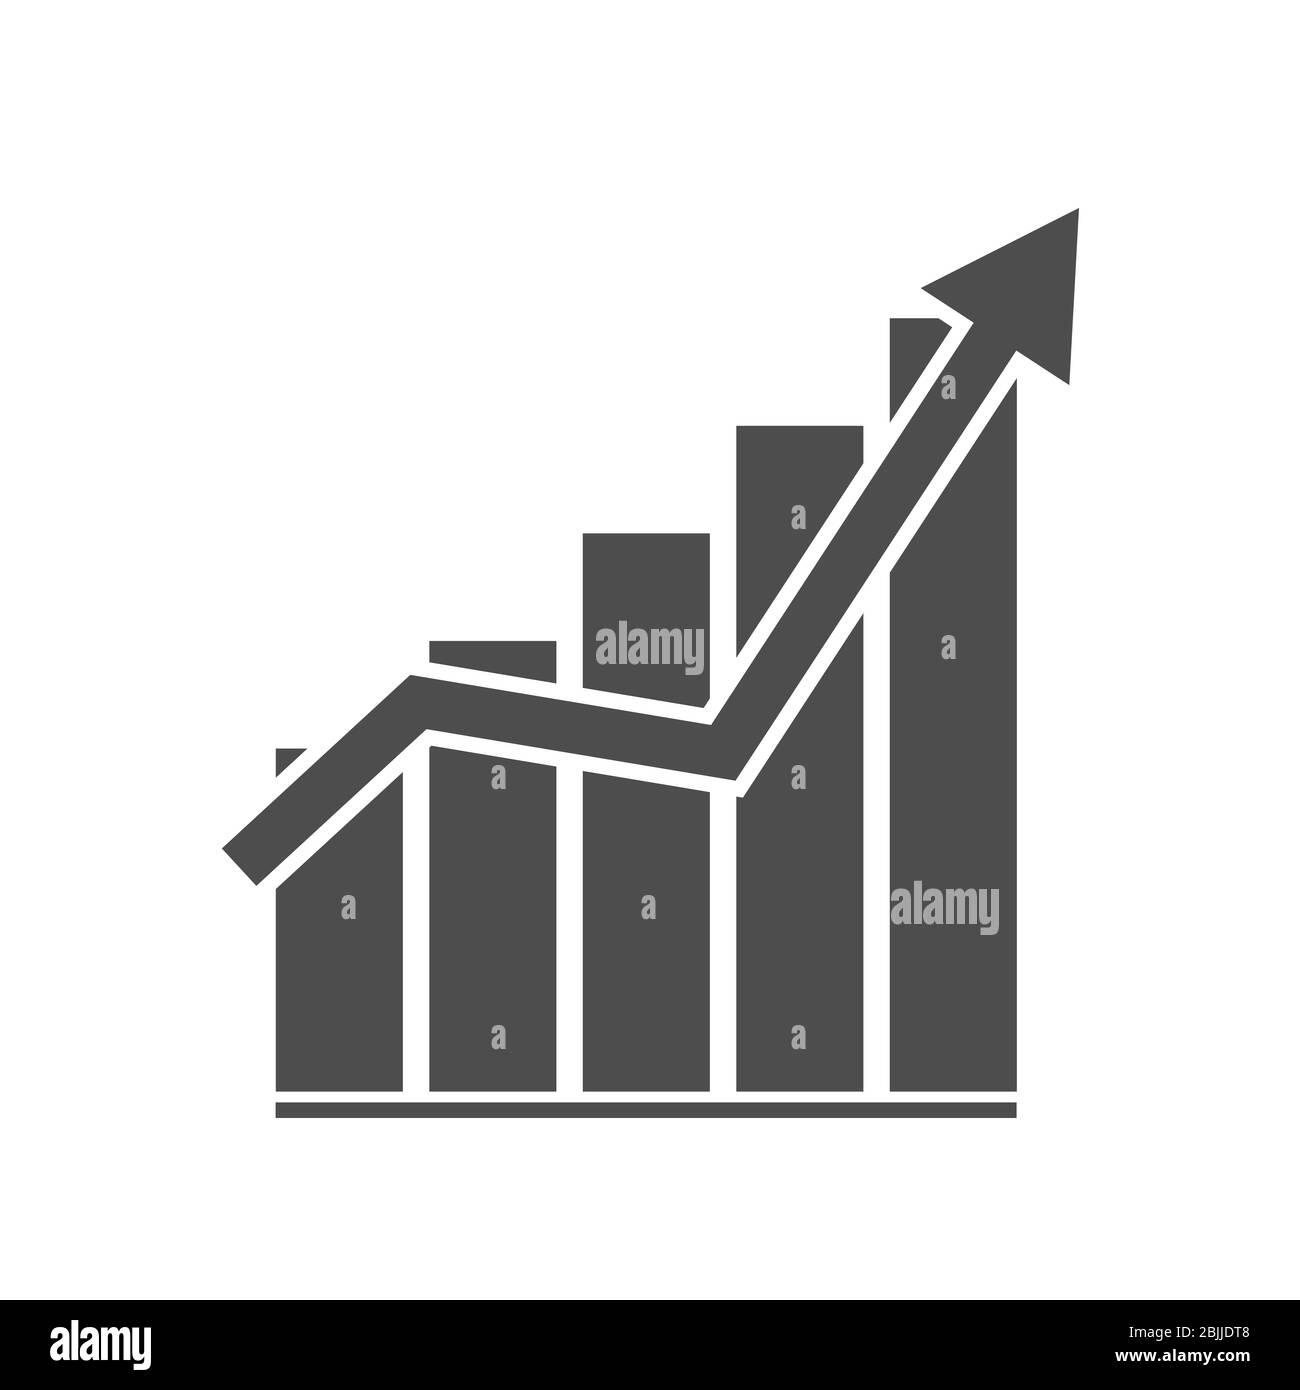 Vektorsymbol des Geschäftswachstumsdiagramms, Finanzen, Stock Illustration isoliert auf weißem Hintergrund. Einfaches Design Stock Vektor